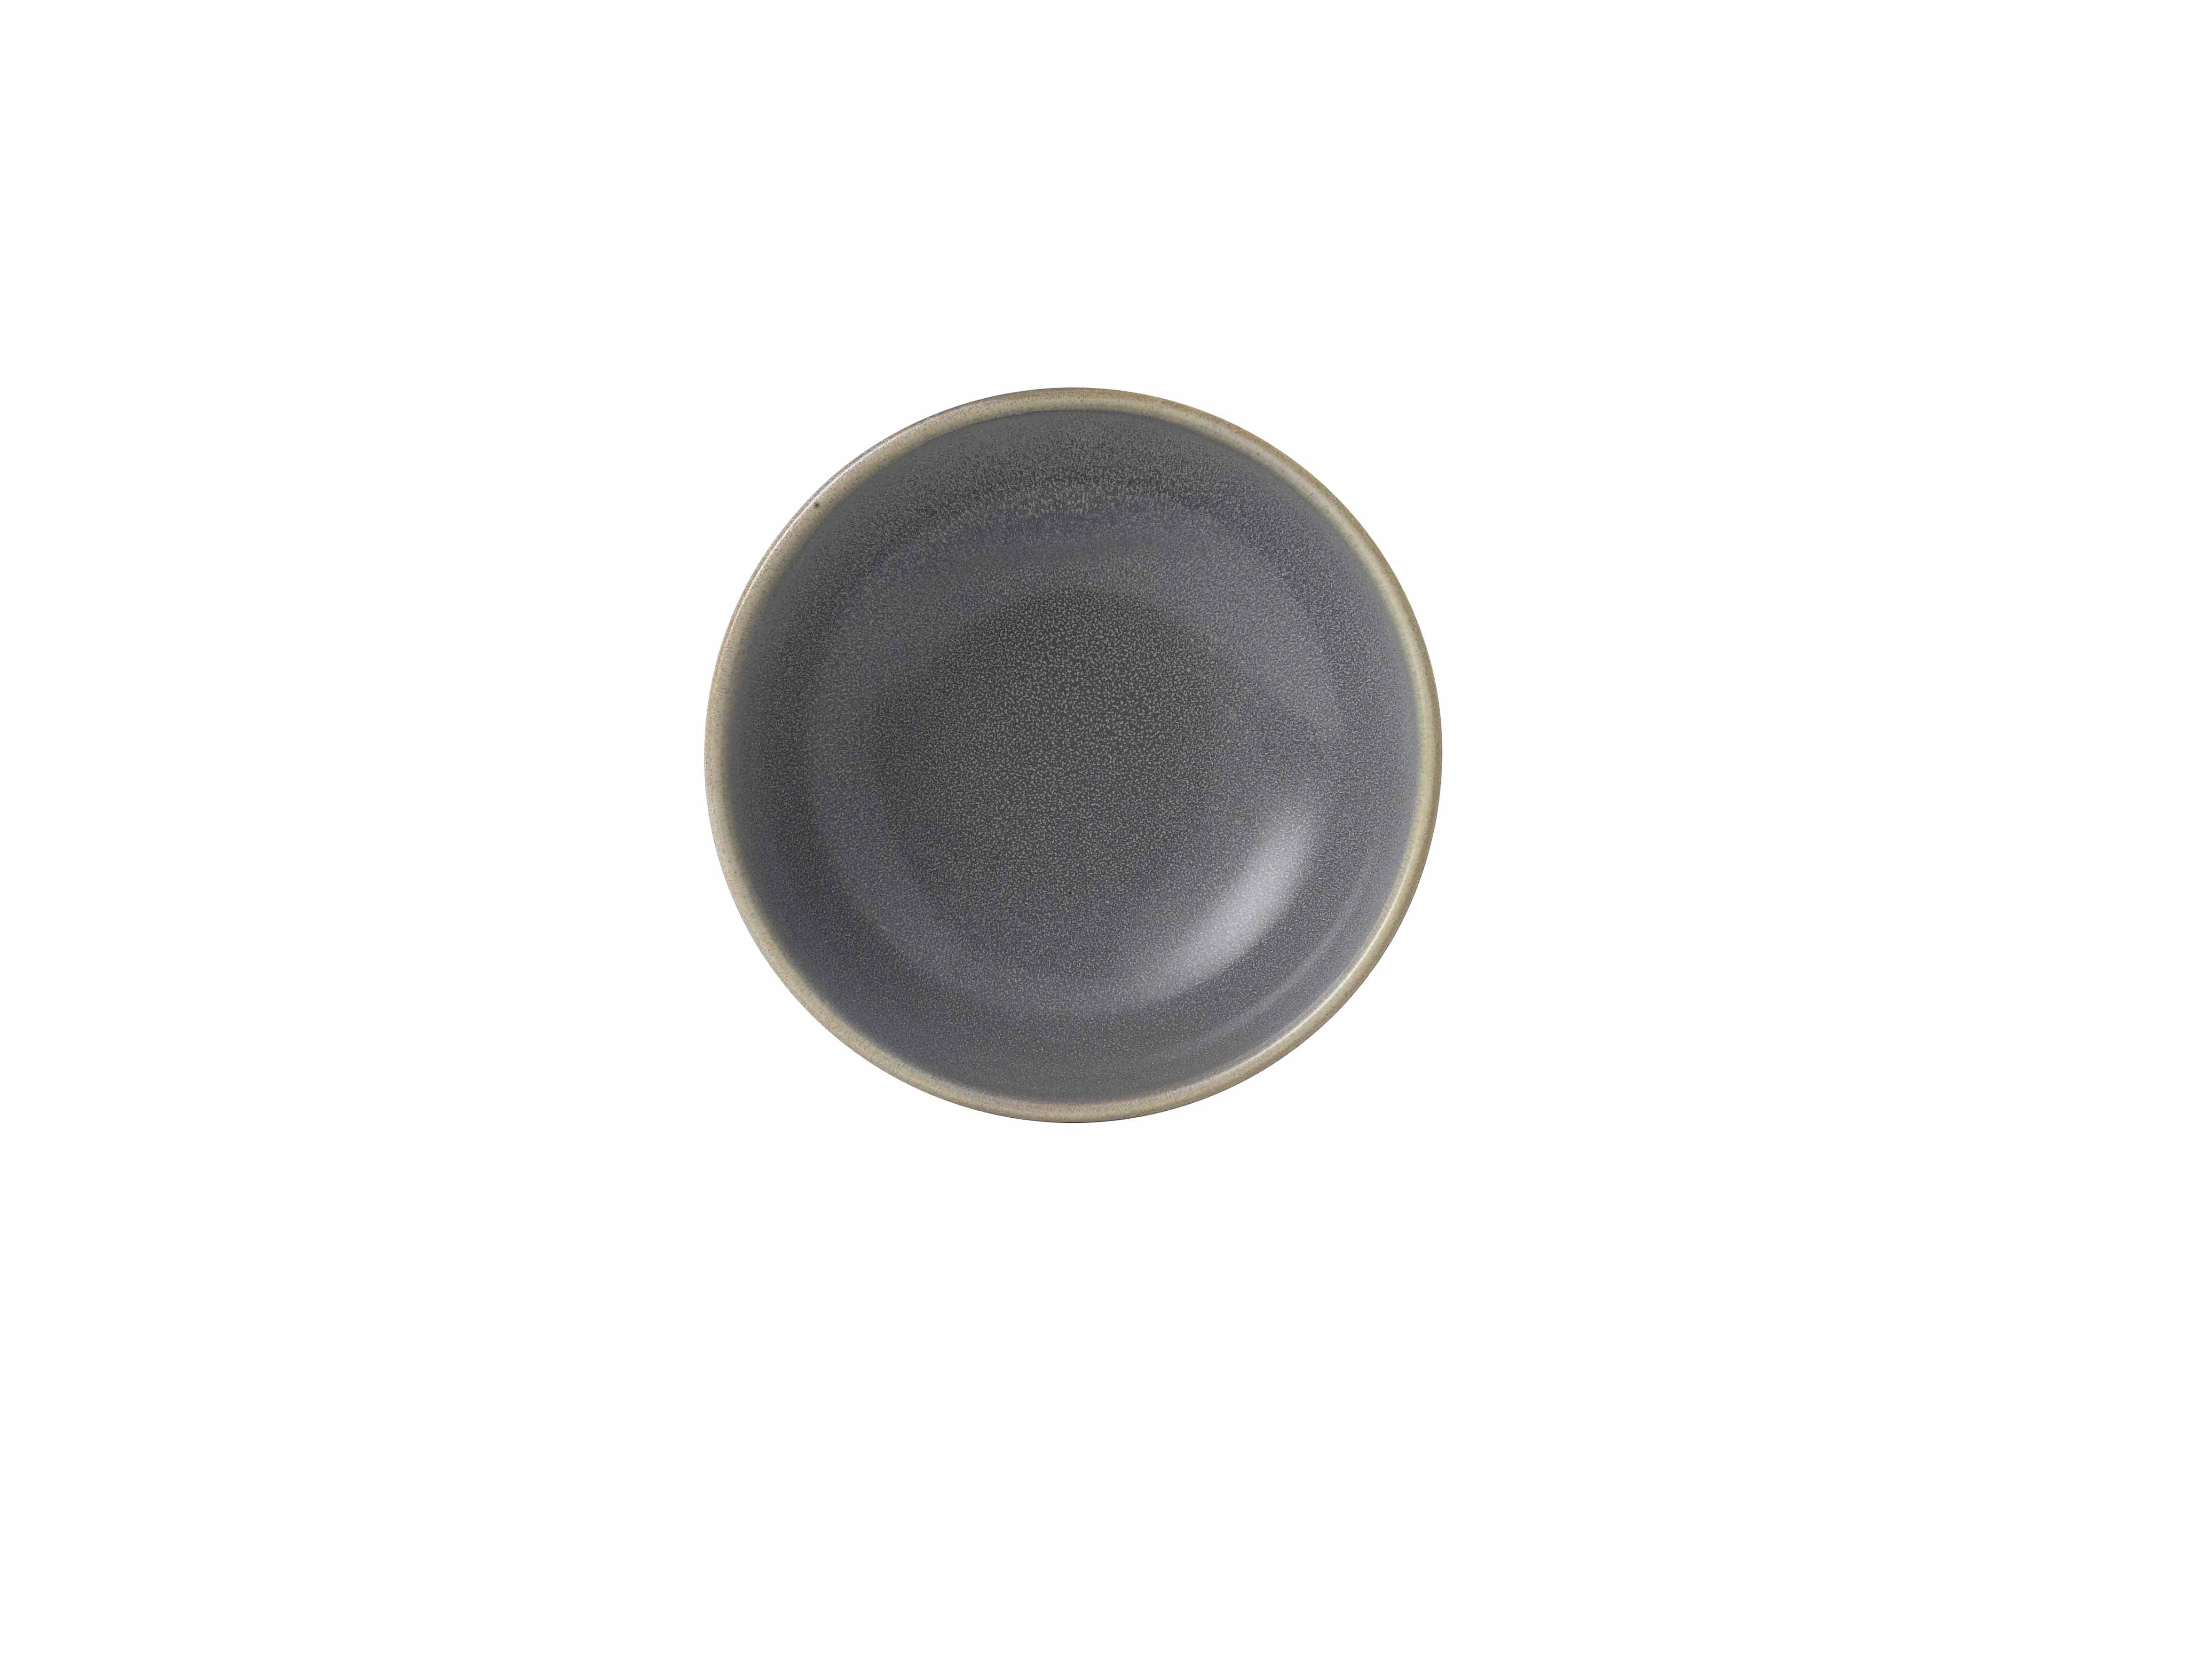 Evo rund, Porzellan Reisschale Dudson 6 85cl, Dudson Granite Dessertschale / granit, Stück, 17,8cm